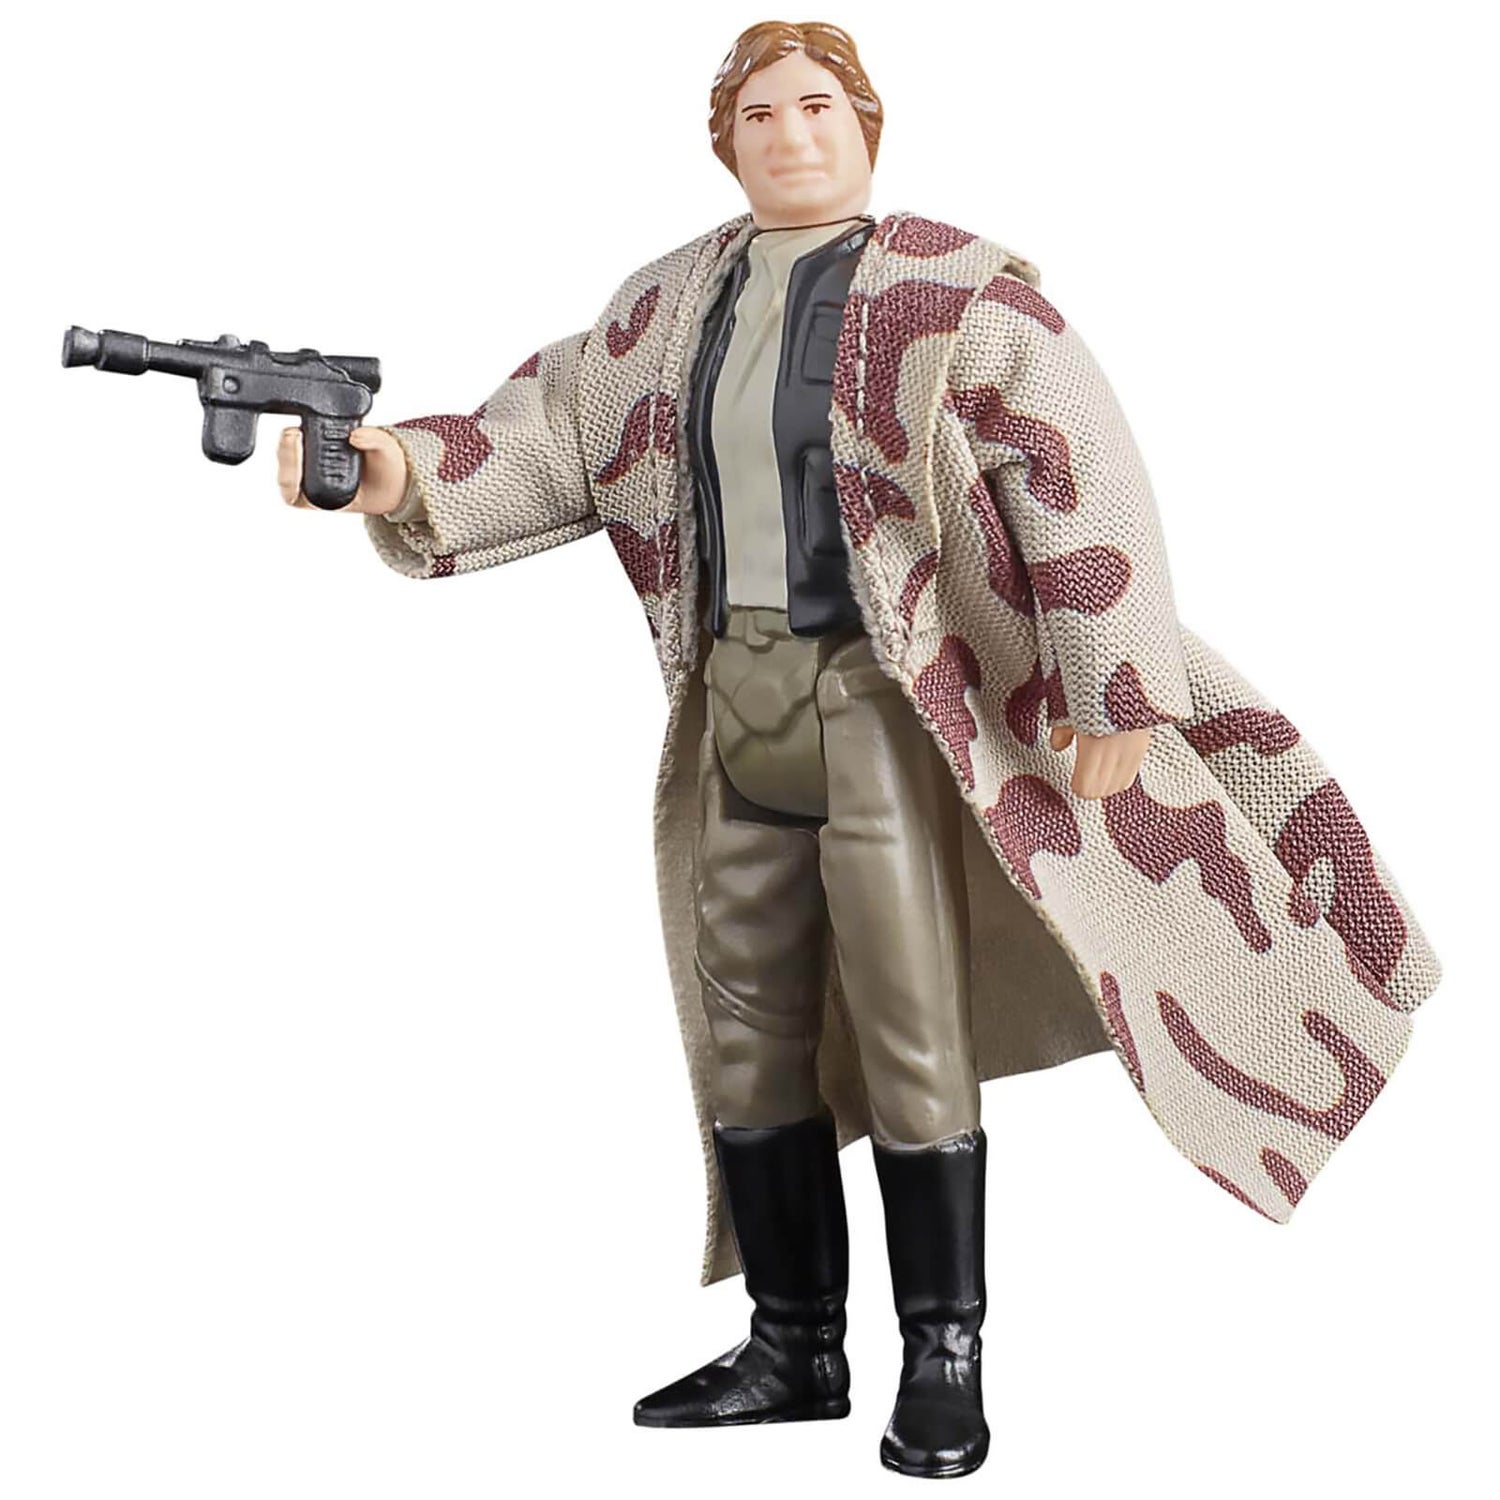 Hasbro Star Wars Retro Collection Han Solo (Endor) Action Figure